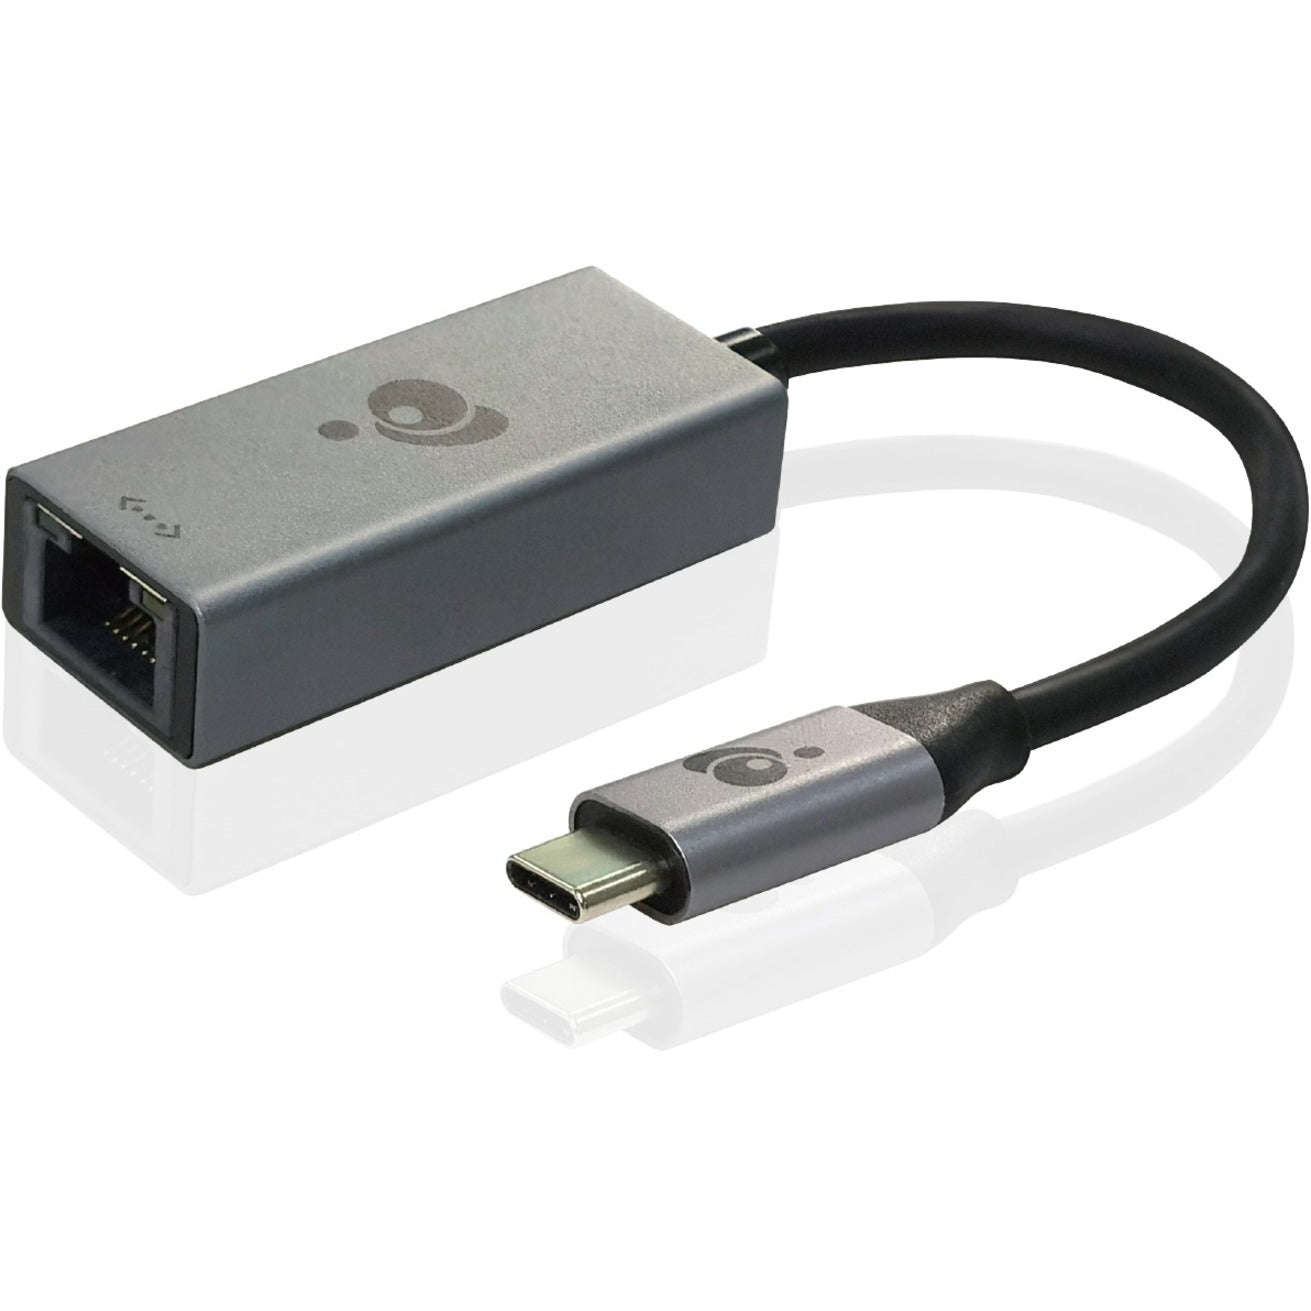 IOGEAR GUC3C01B جيجالينك برو 3.1 USB 3.1 النوع ج إلى محول إيثرنت غيغابت ، اتصال شبكة عالية السرعة